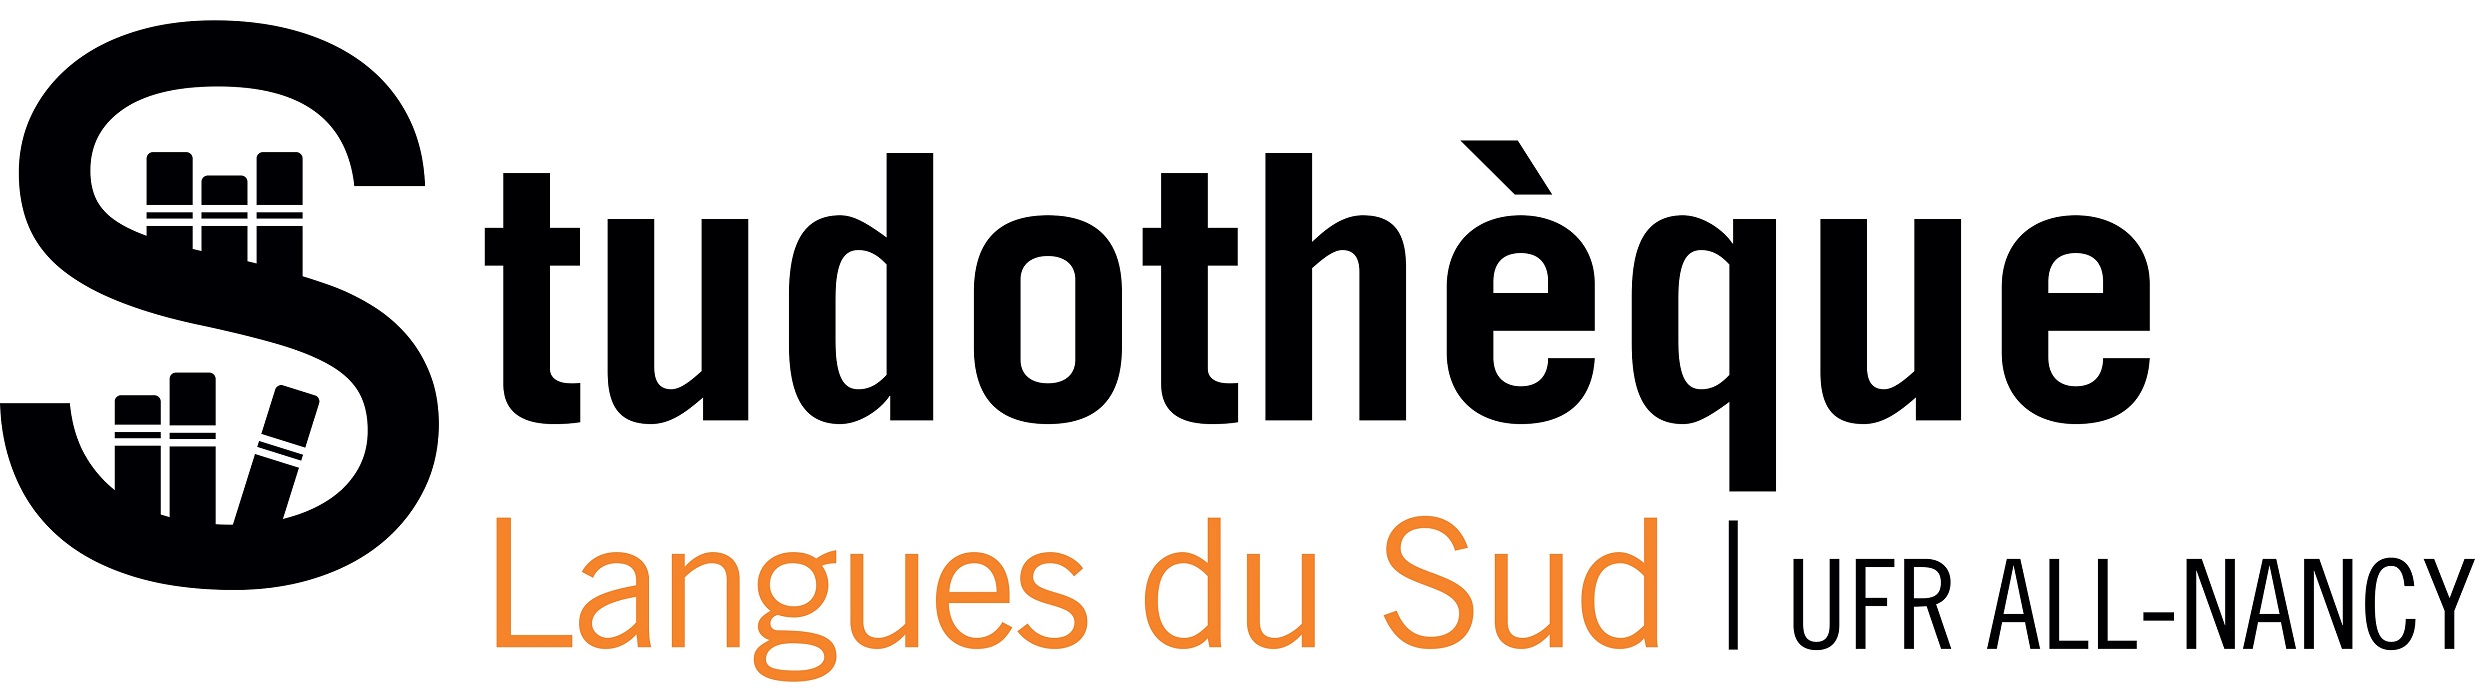 Studothèque Langues du Sud logo